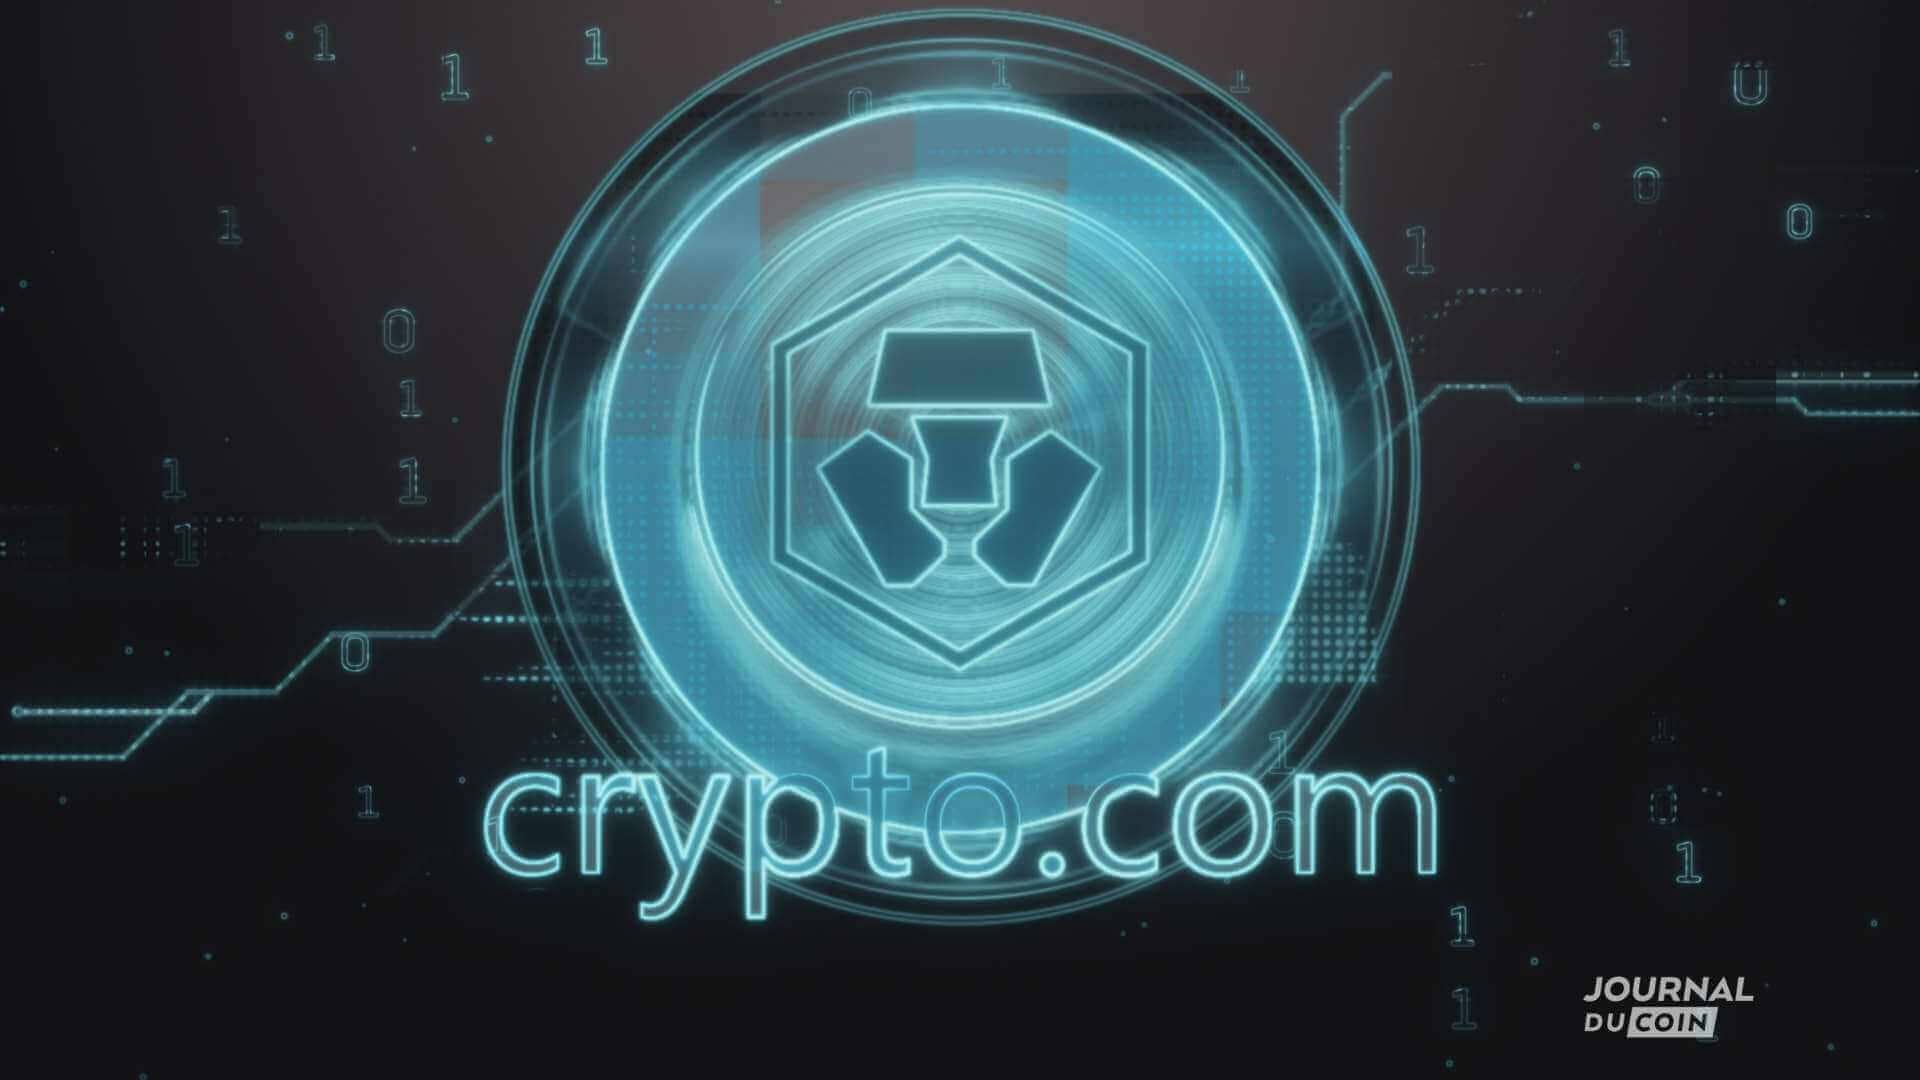 Die Kryptobörse crypto.com sponsert die UFC, aber auch eine Vielzahl anderer Vereine und Ligen.  Tolle Bitcoin-Aktion!